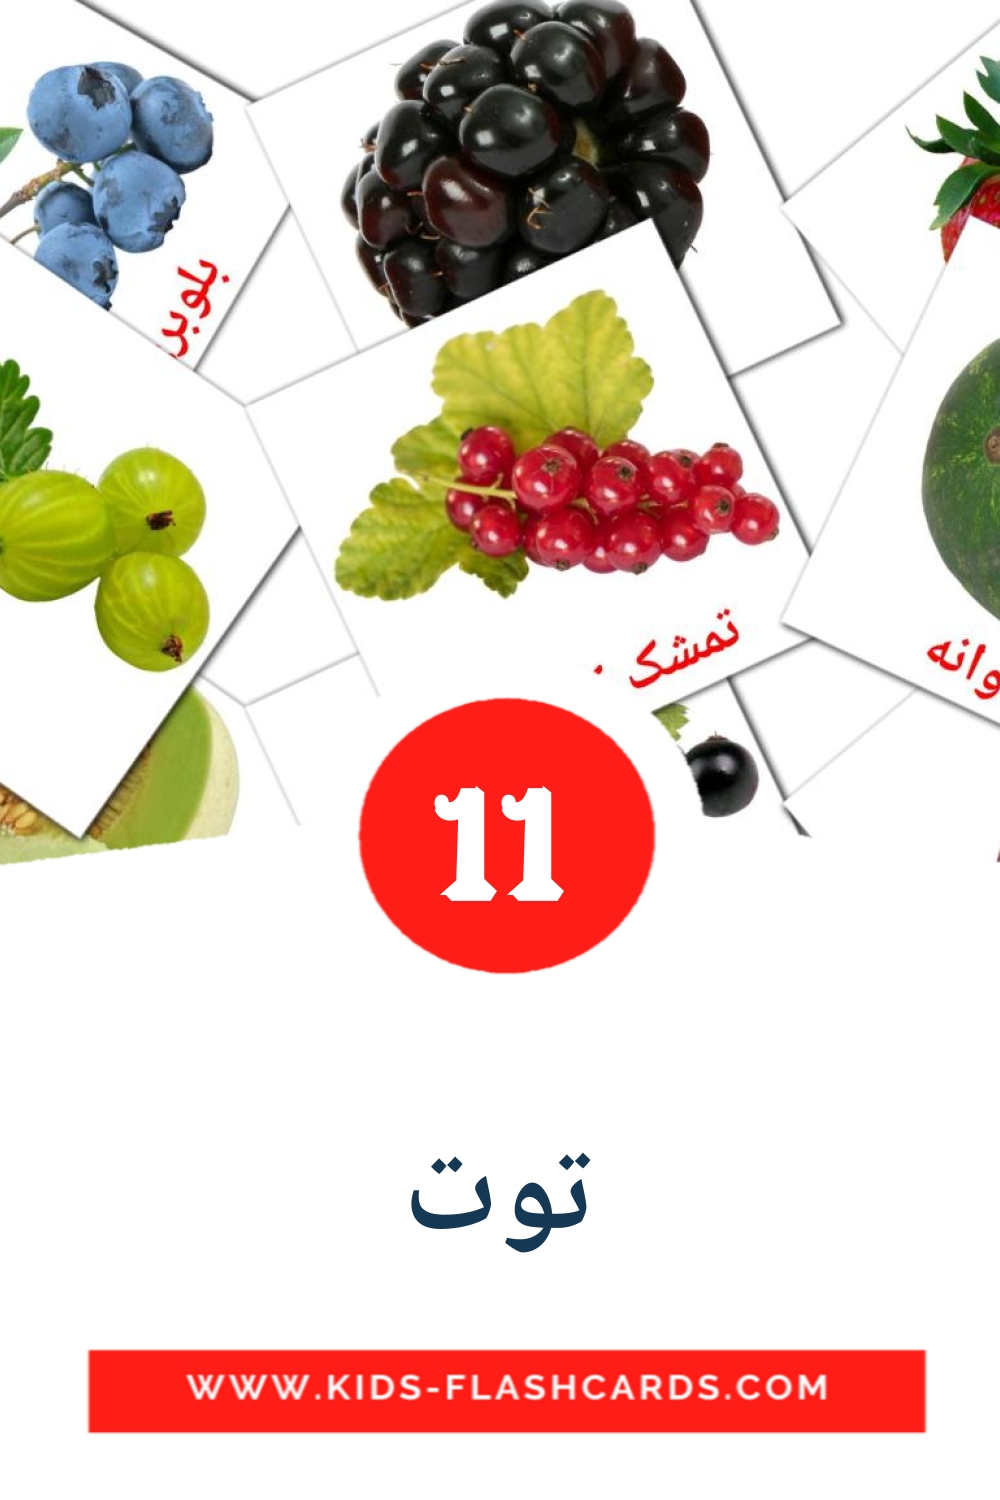 11 tarjetas didacticas de توت para el jardín de infancia en persa